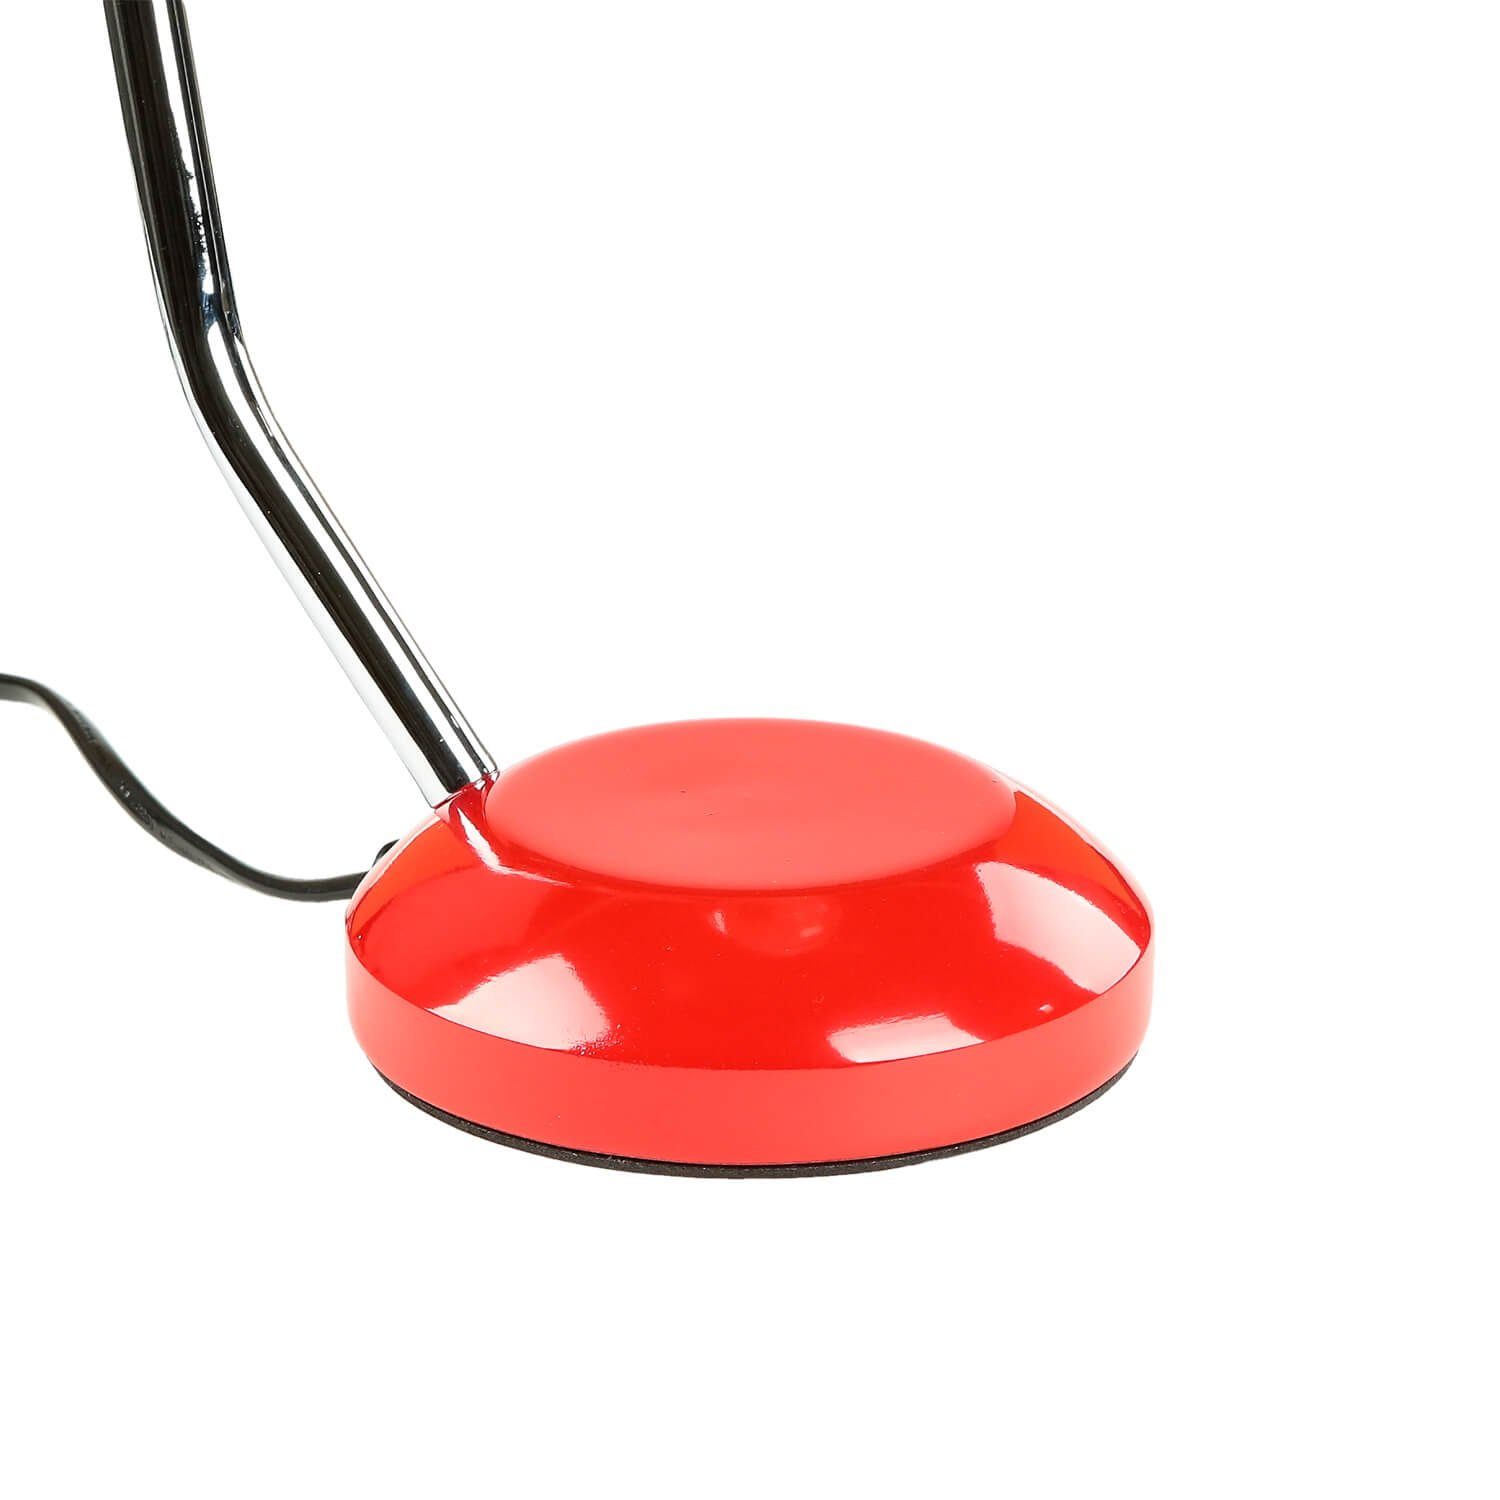 Metall 36 ohne Rot cm Retro Schreibtischlampe Leuchtmittel, E27 Tischleuchte POCATELLO, Design Licht-Erlebnisse flexibel verstellbar